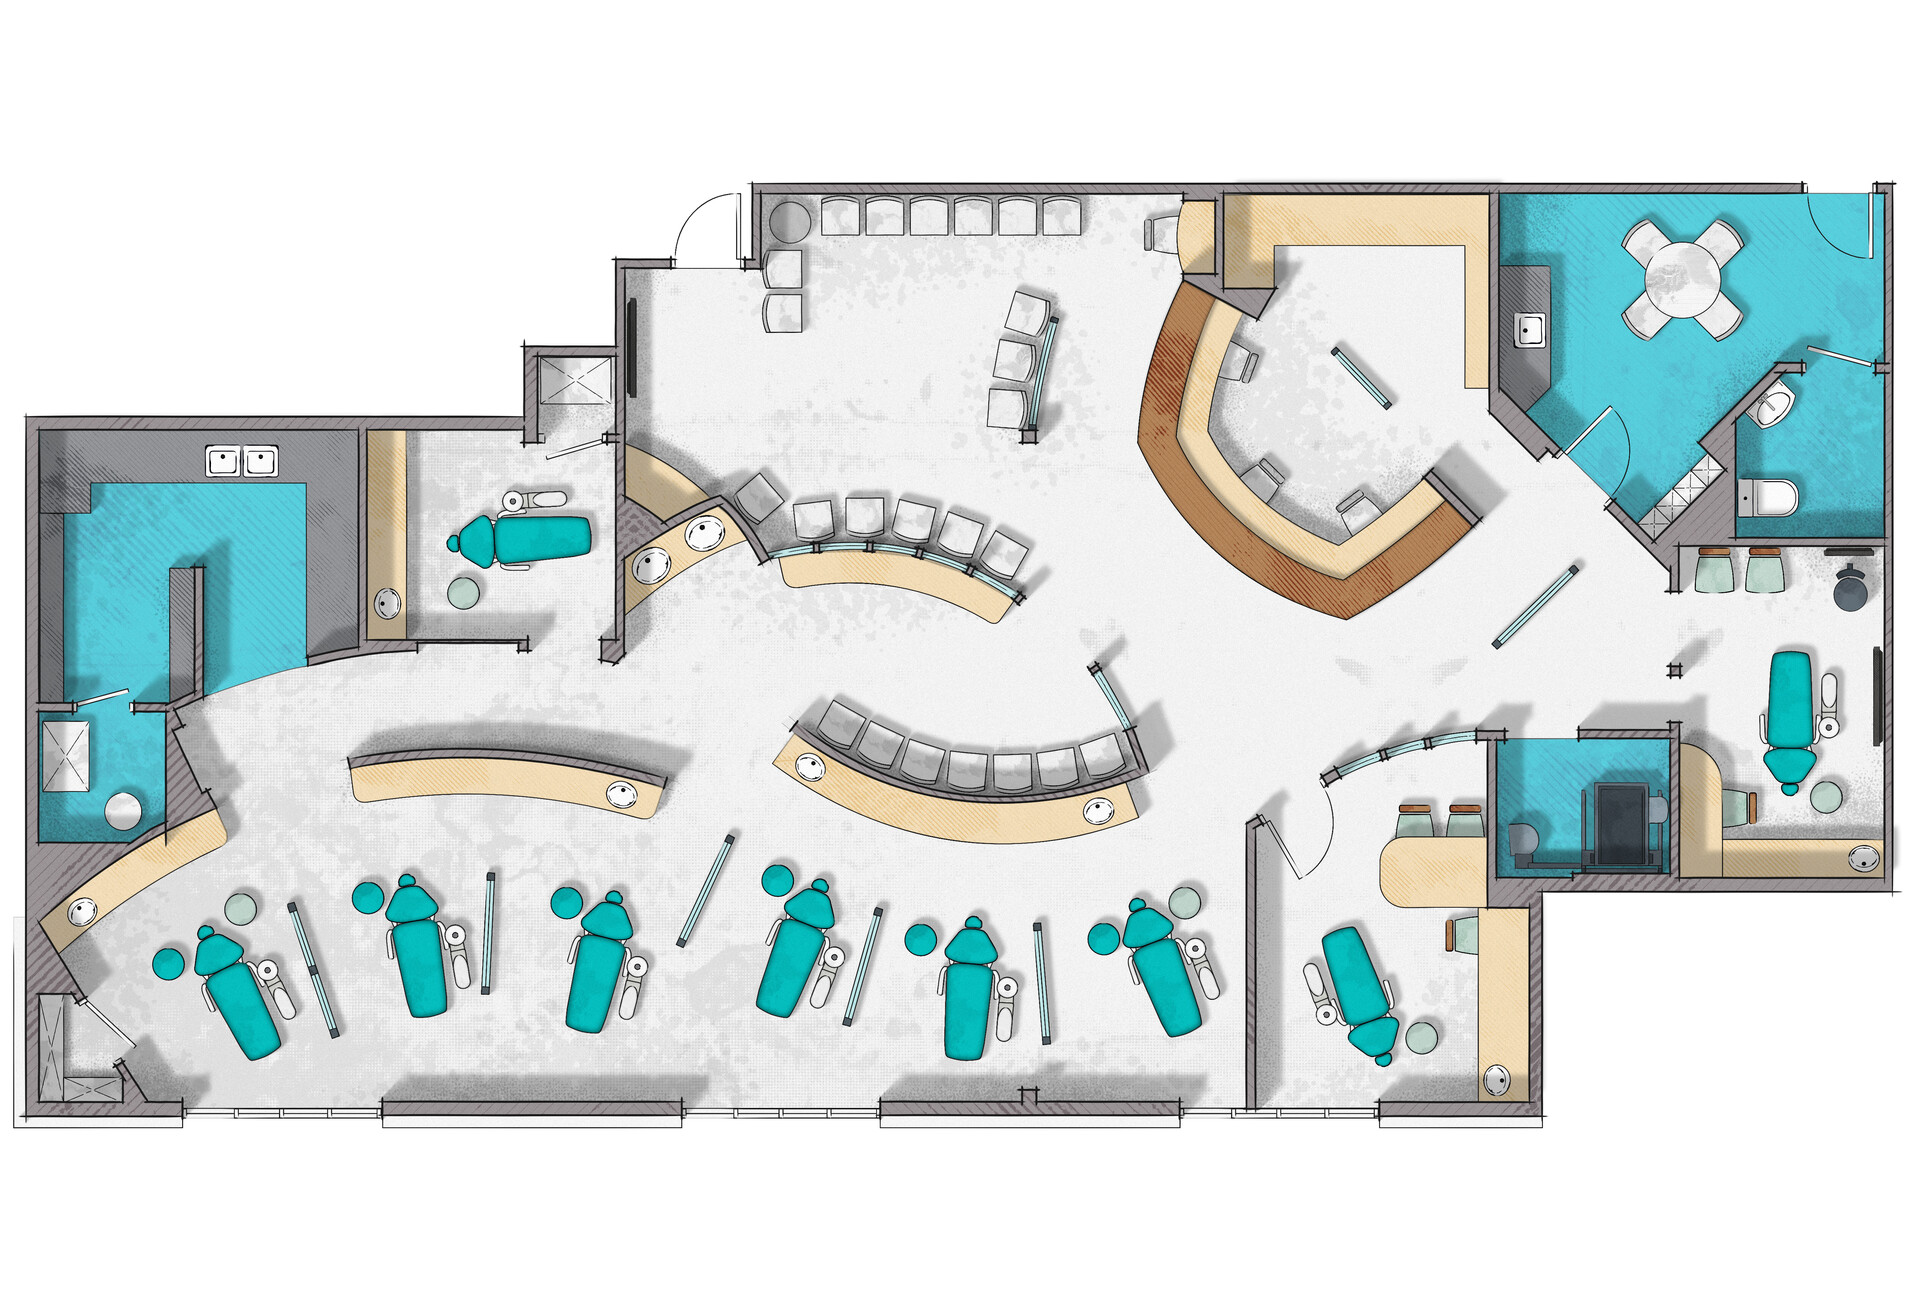 ArtStation - Dental clinic floor plan rendering